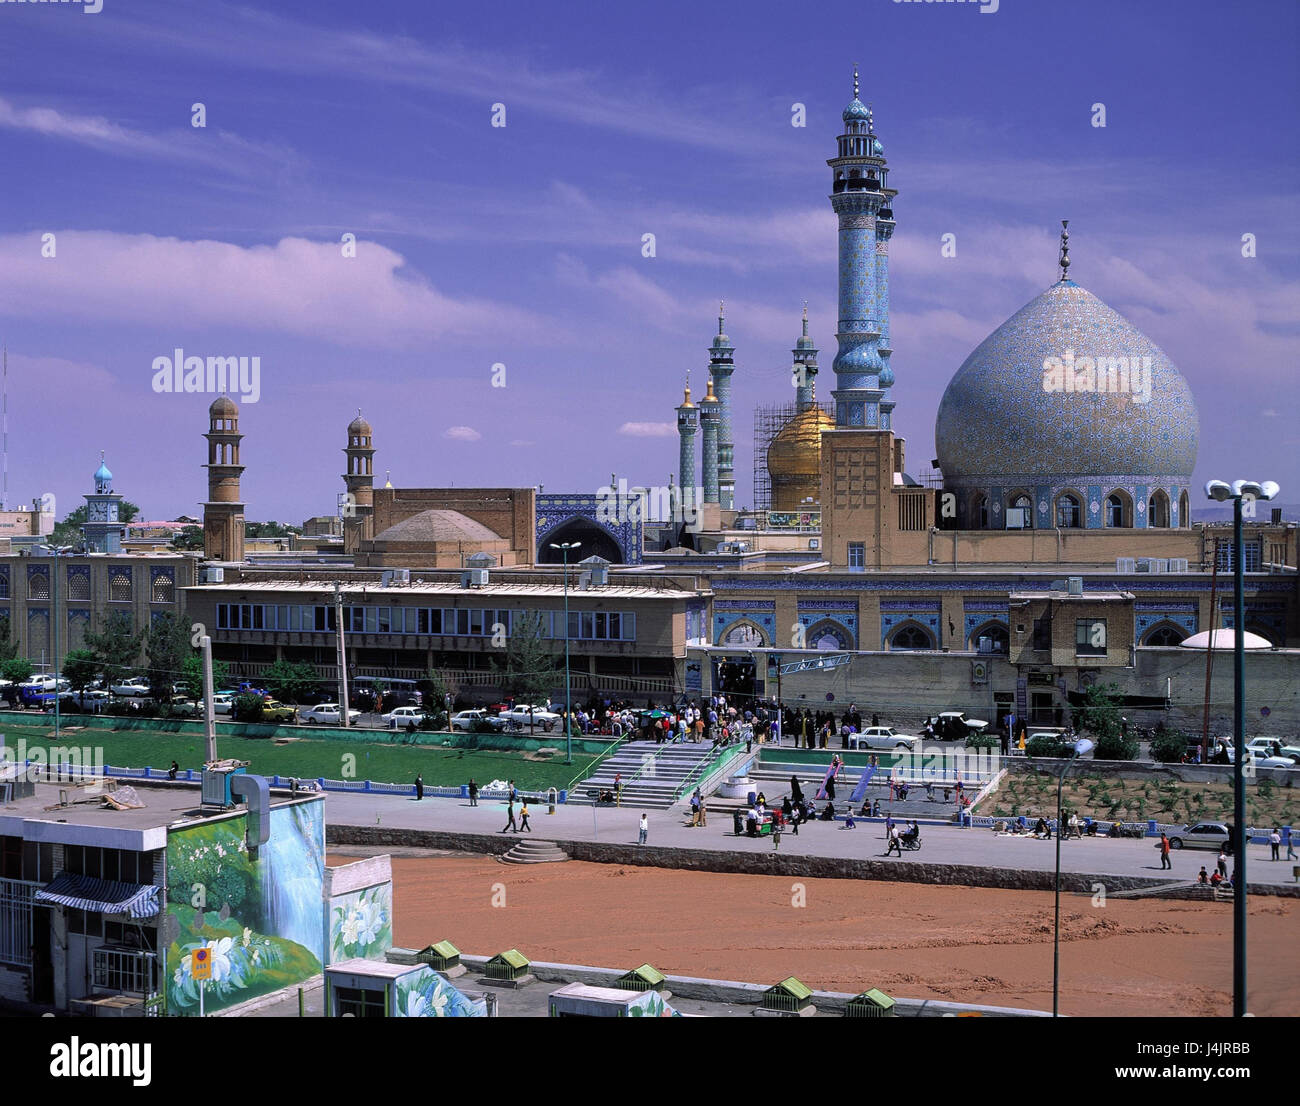 Iran, Ghom, Blick auf die Stadt, Imam der Moschee, Straßenszene außerhalb, Moschee, Imam der Moschee, Verkehr, Übersicht, Übersicht Stockfoto